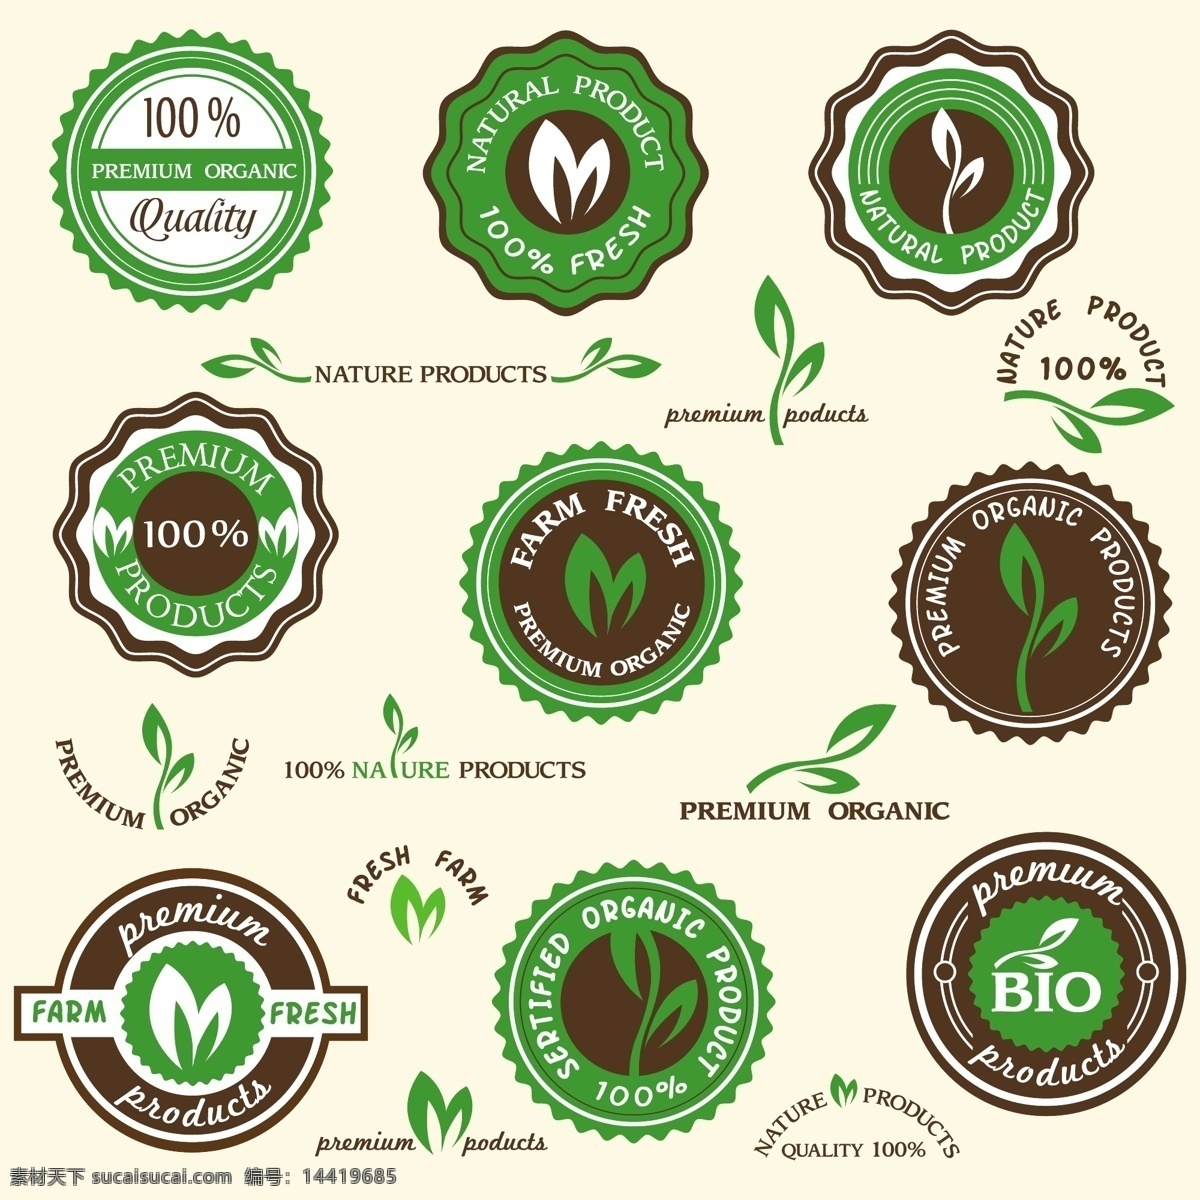 原生态 绿色环保 徽章 标签 绿色 环保 禾苗 认证 品牌 商标 手绘 矢量 生态 图标 小图标 标识标志图标